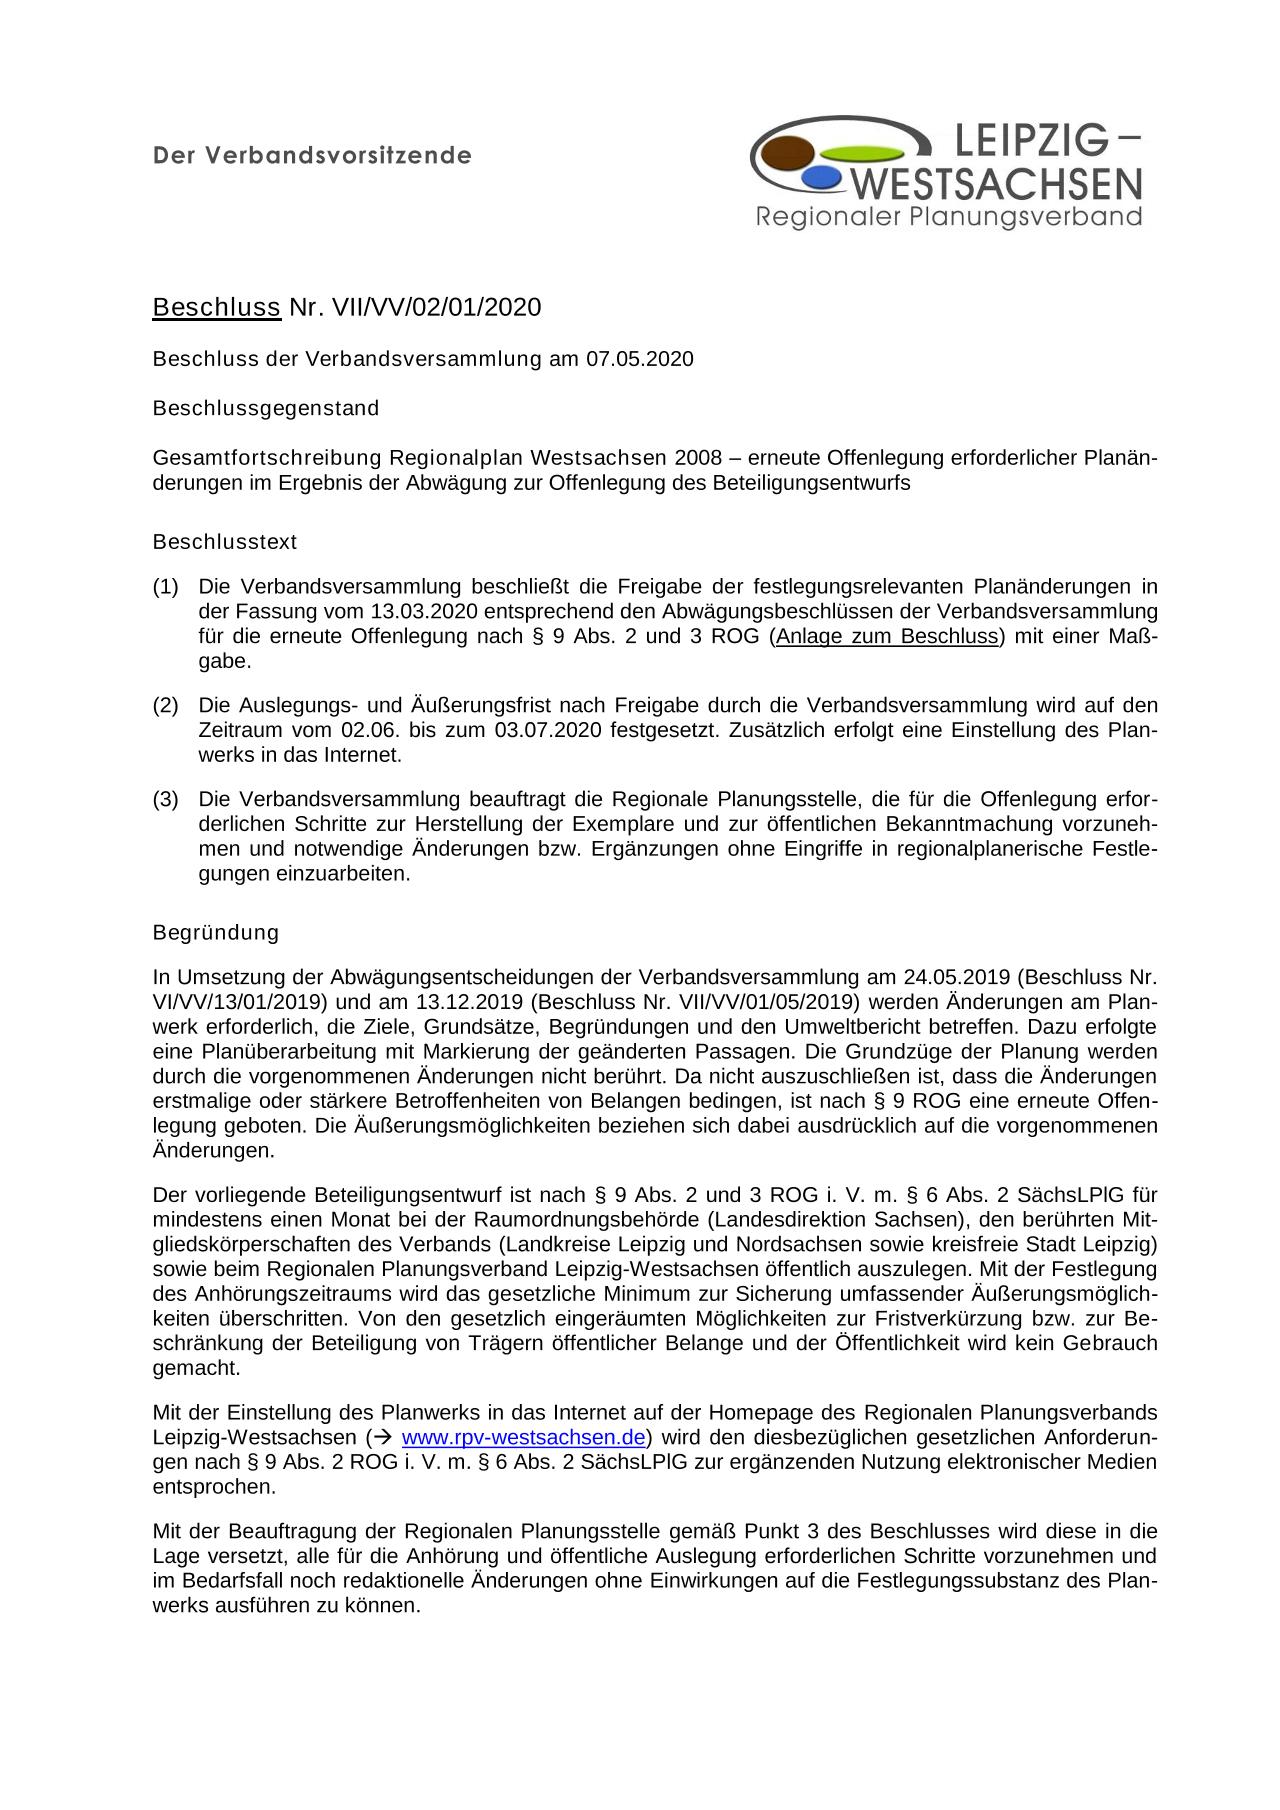 Beschluss der Verbandsversammlung Nr. VII/VV/02/01/2020 - Download